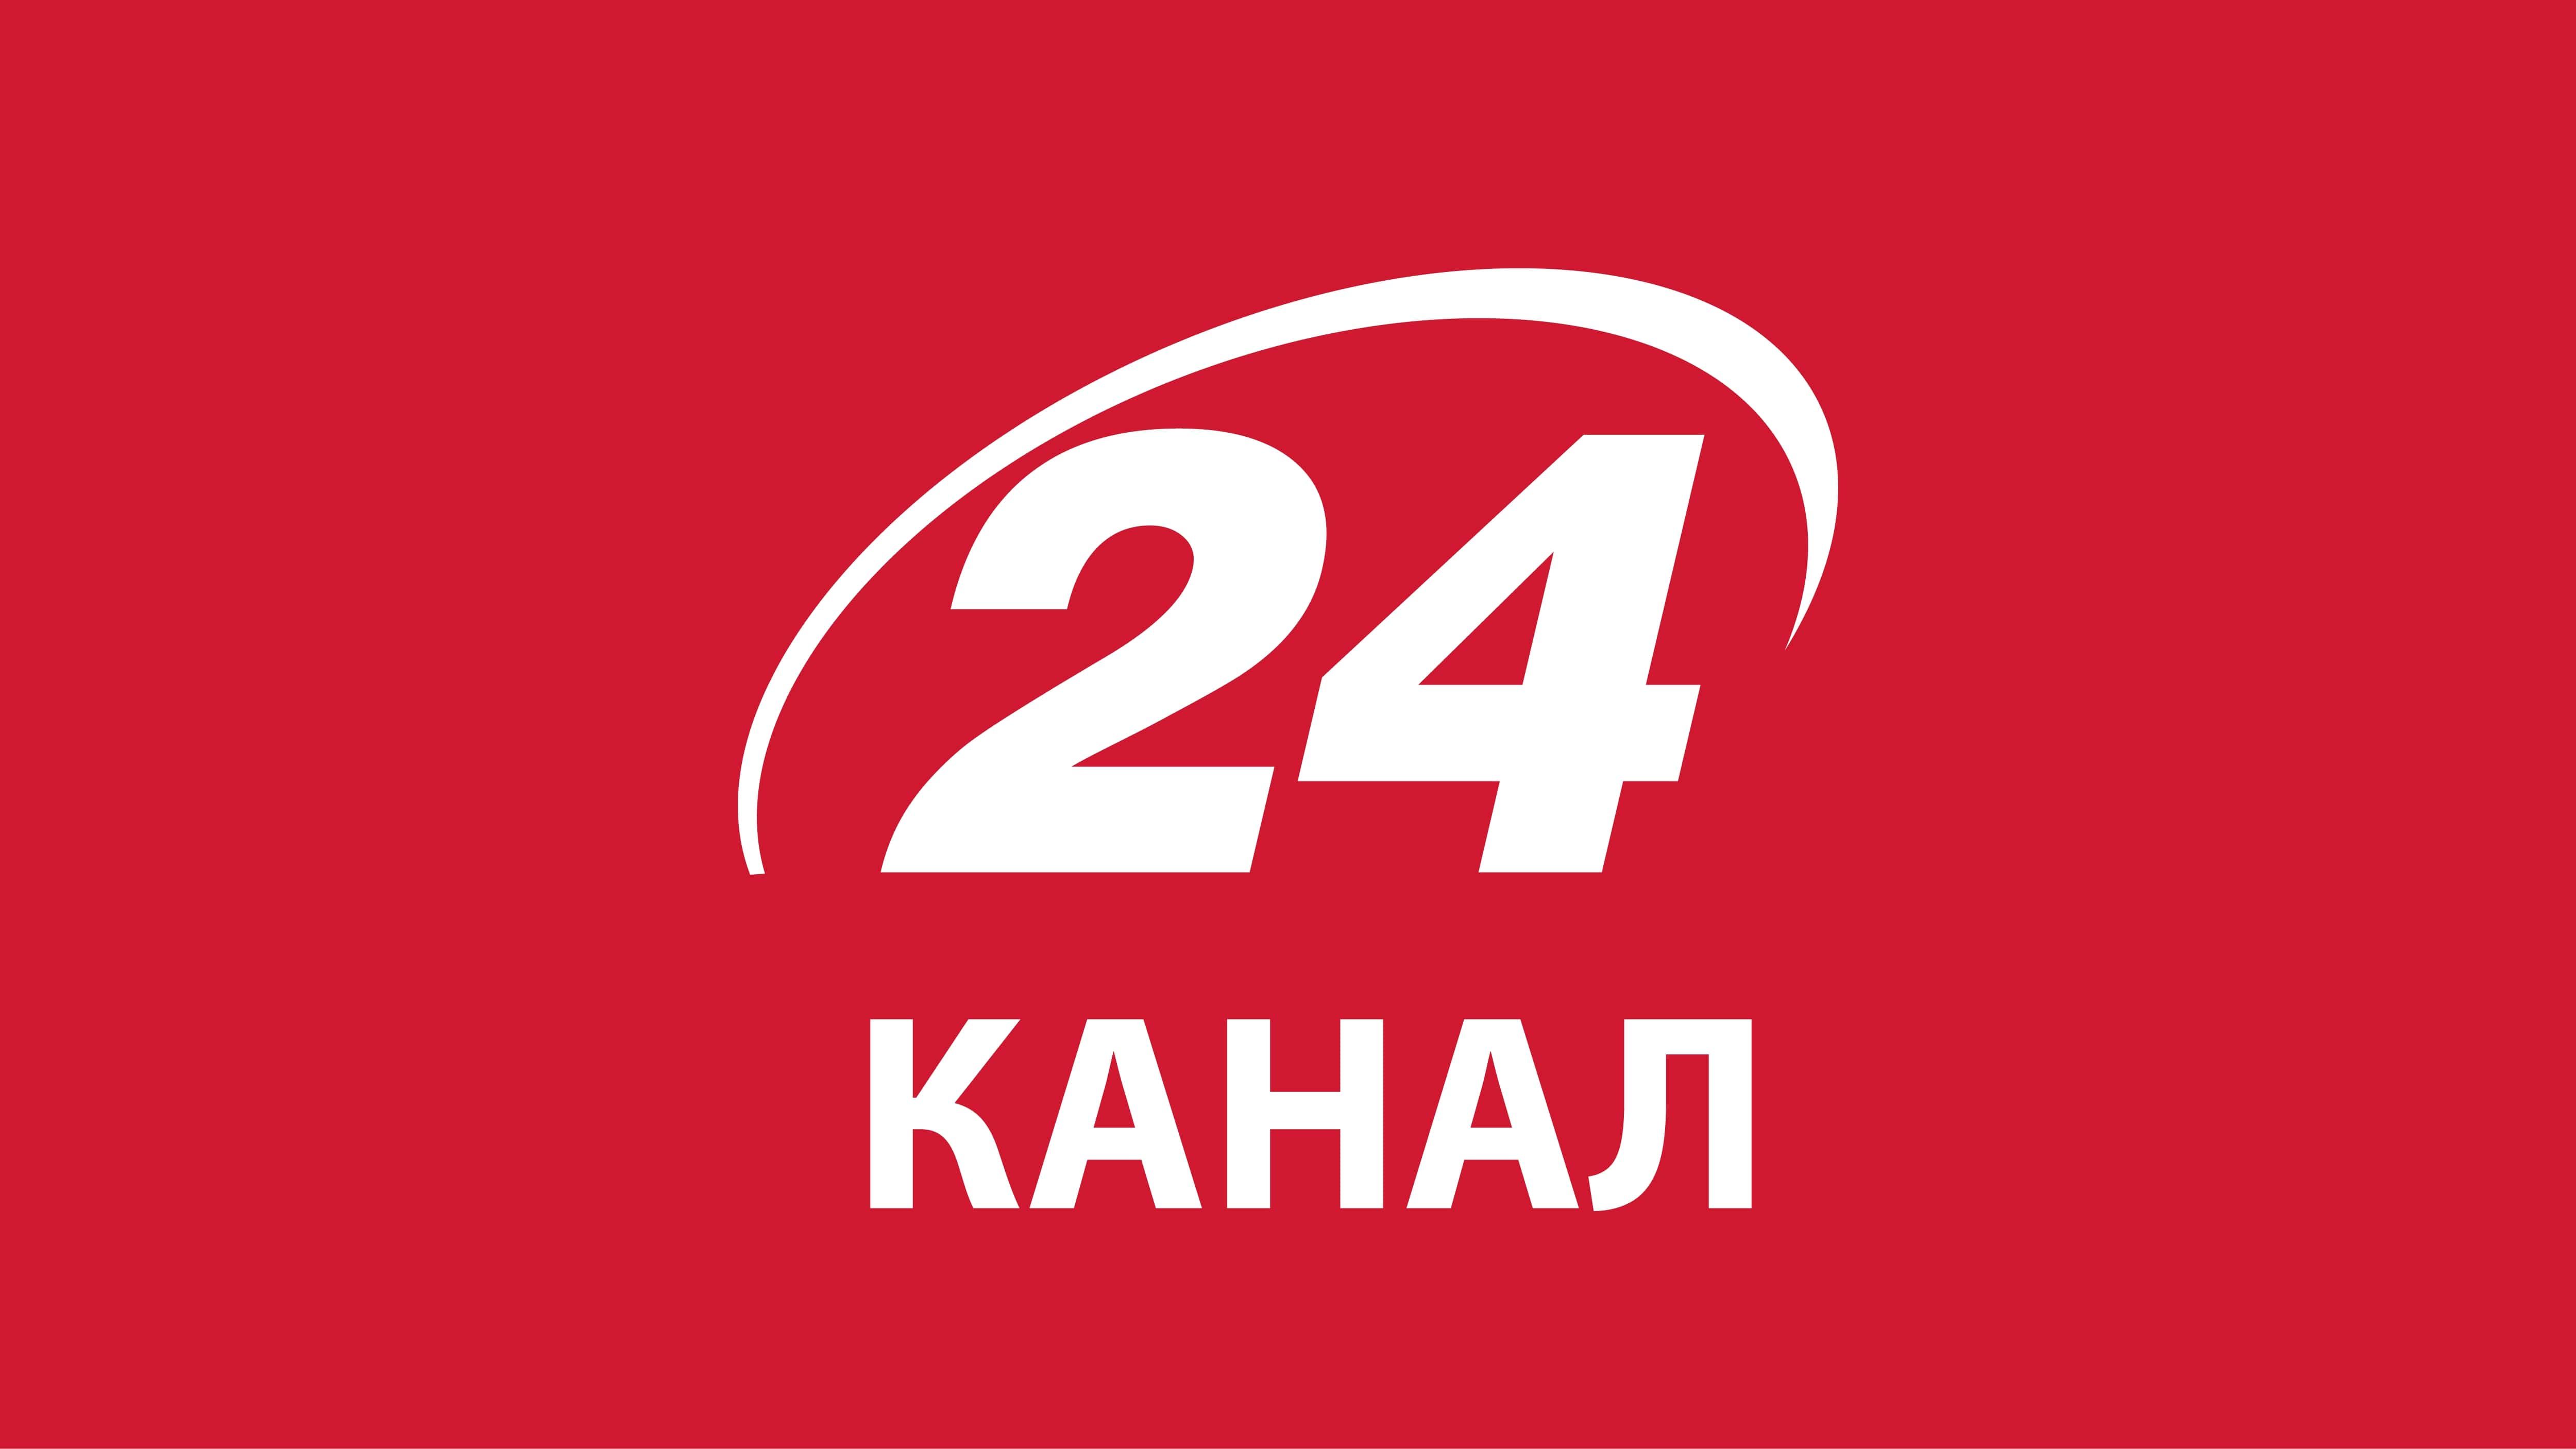 Сайт 24tv.ua стал самым популярным новостным сайтом: рейтинг